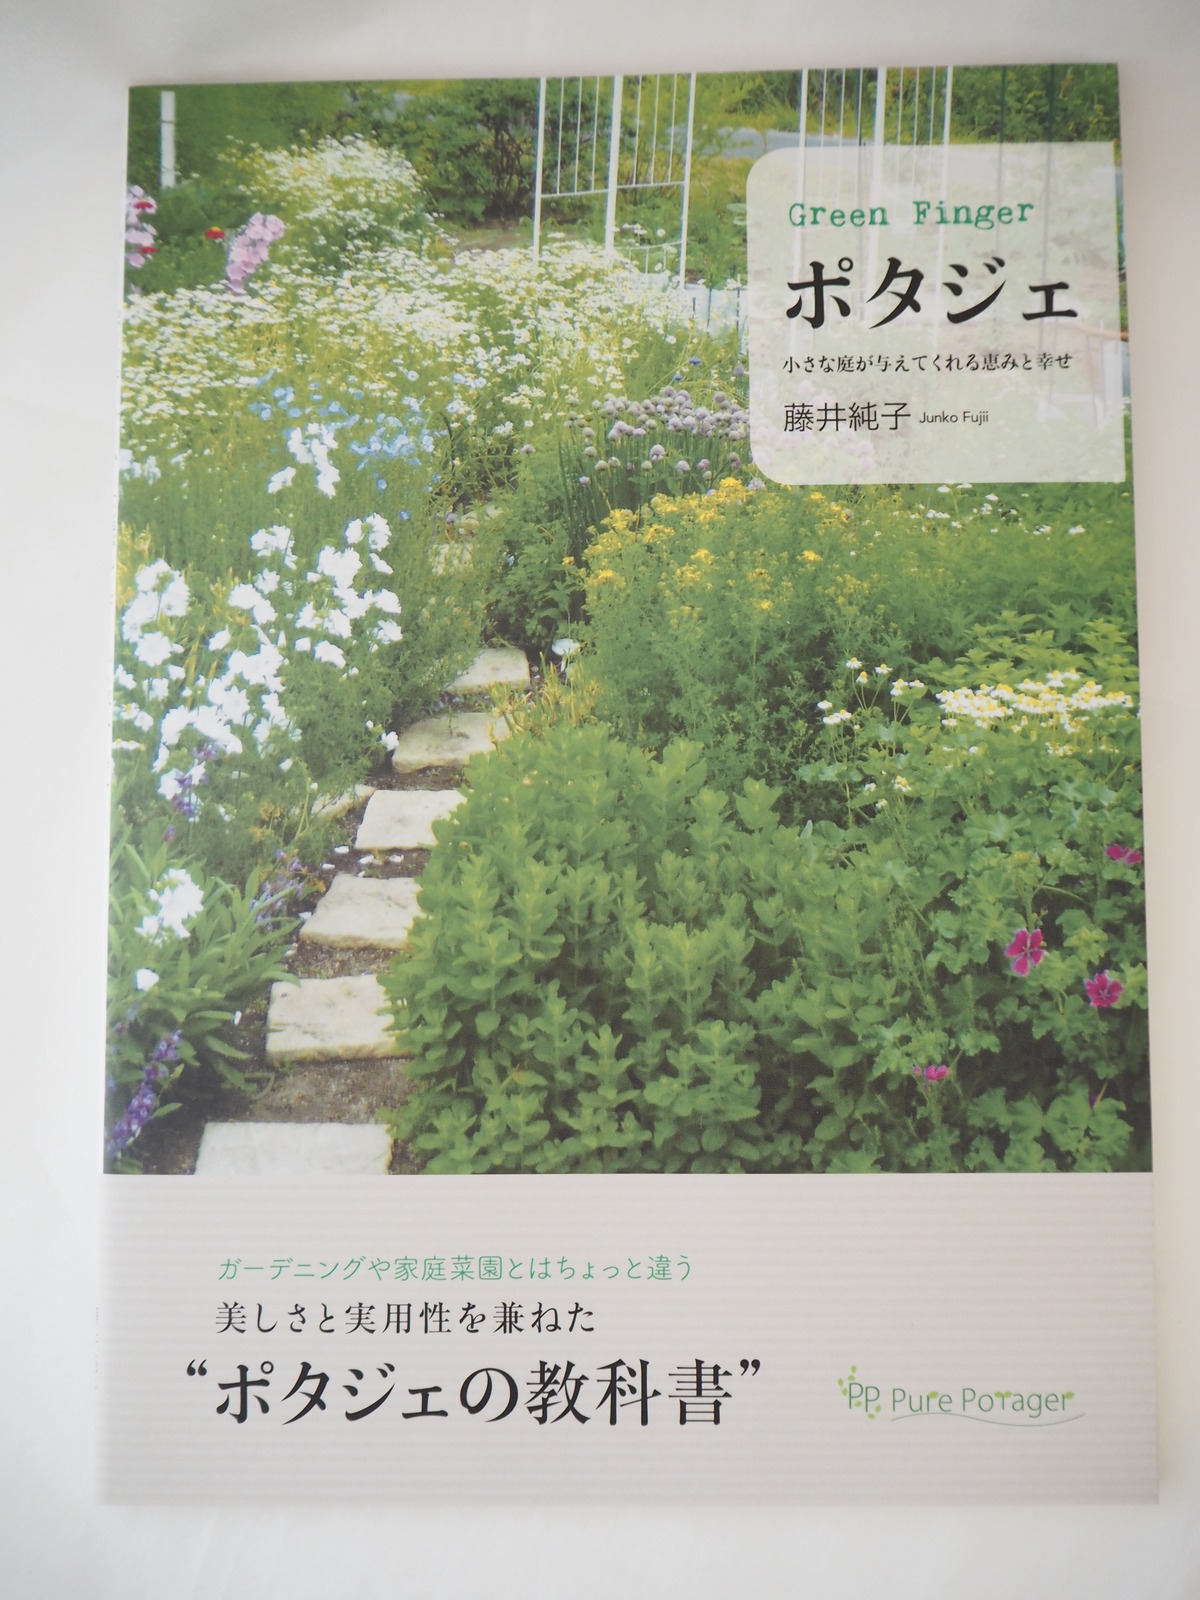 Green Finger ポタジェ 小さな庭が与えてくれる恵みと幸せ 著者 藤井純子 ピュア ポタジェ Pure Potager